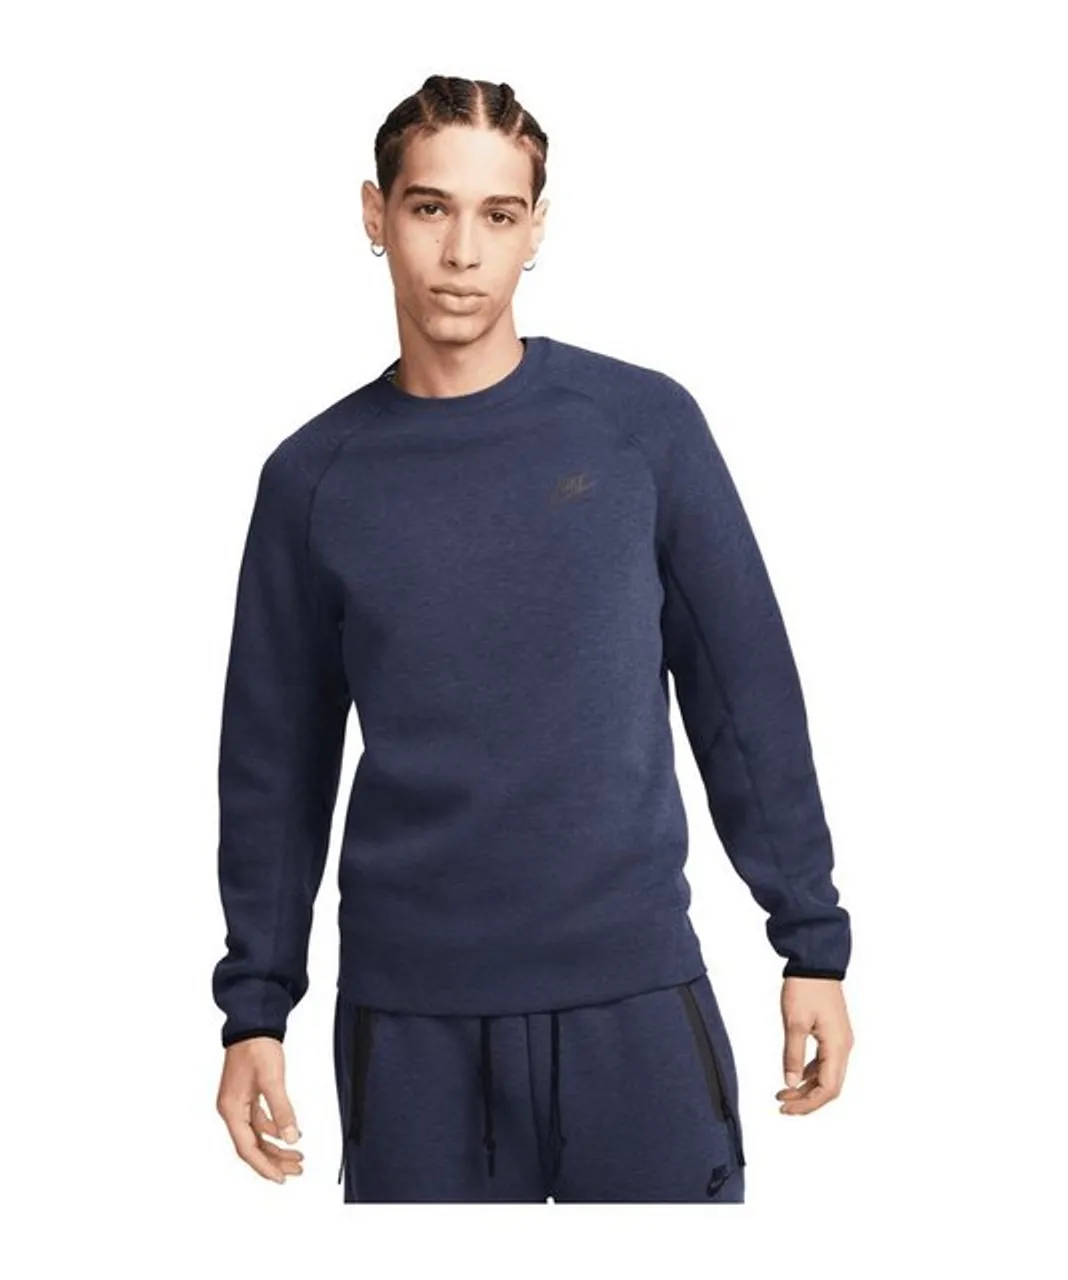 Nike Sportswear Sweatshirt Tech Fleece Crew Sweatshirt